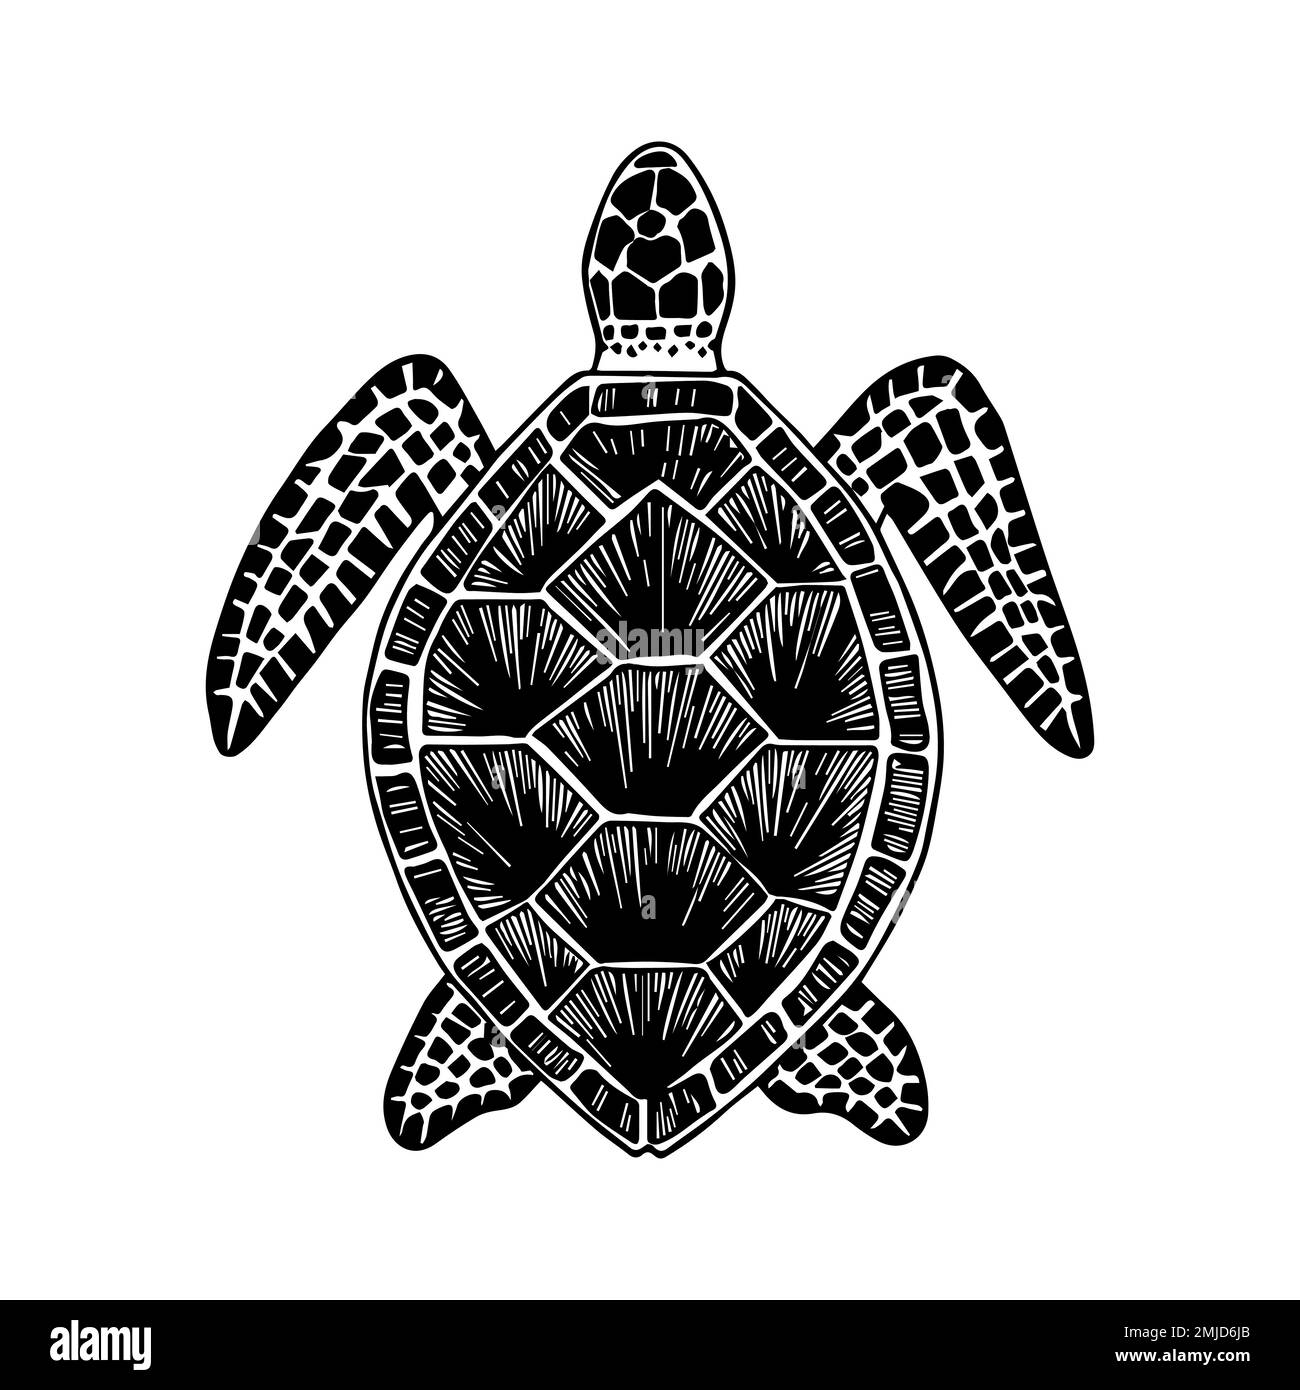 Schildkröte. Handgezeichnetes stilisiertes Bild einer Schildkröte. Schwarzweißes Grafikbild isoliert auf weißem Hintergrund. Vektordarstellung. Stock Vektor